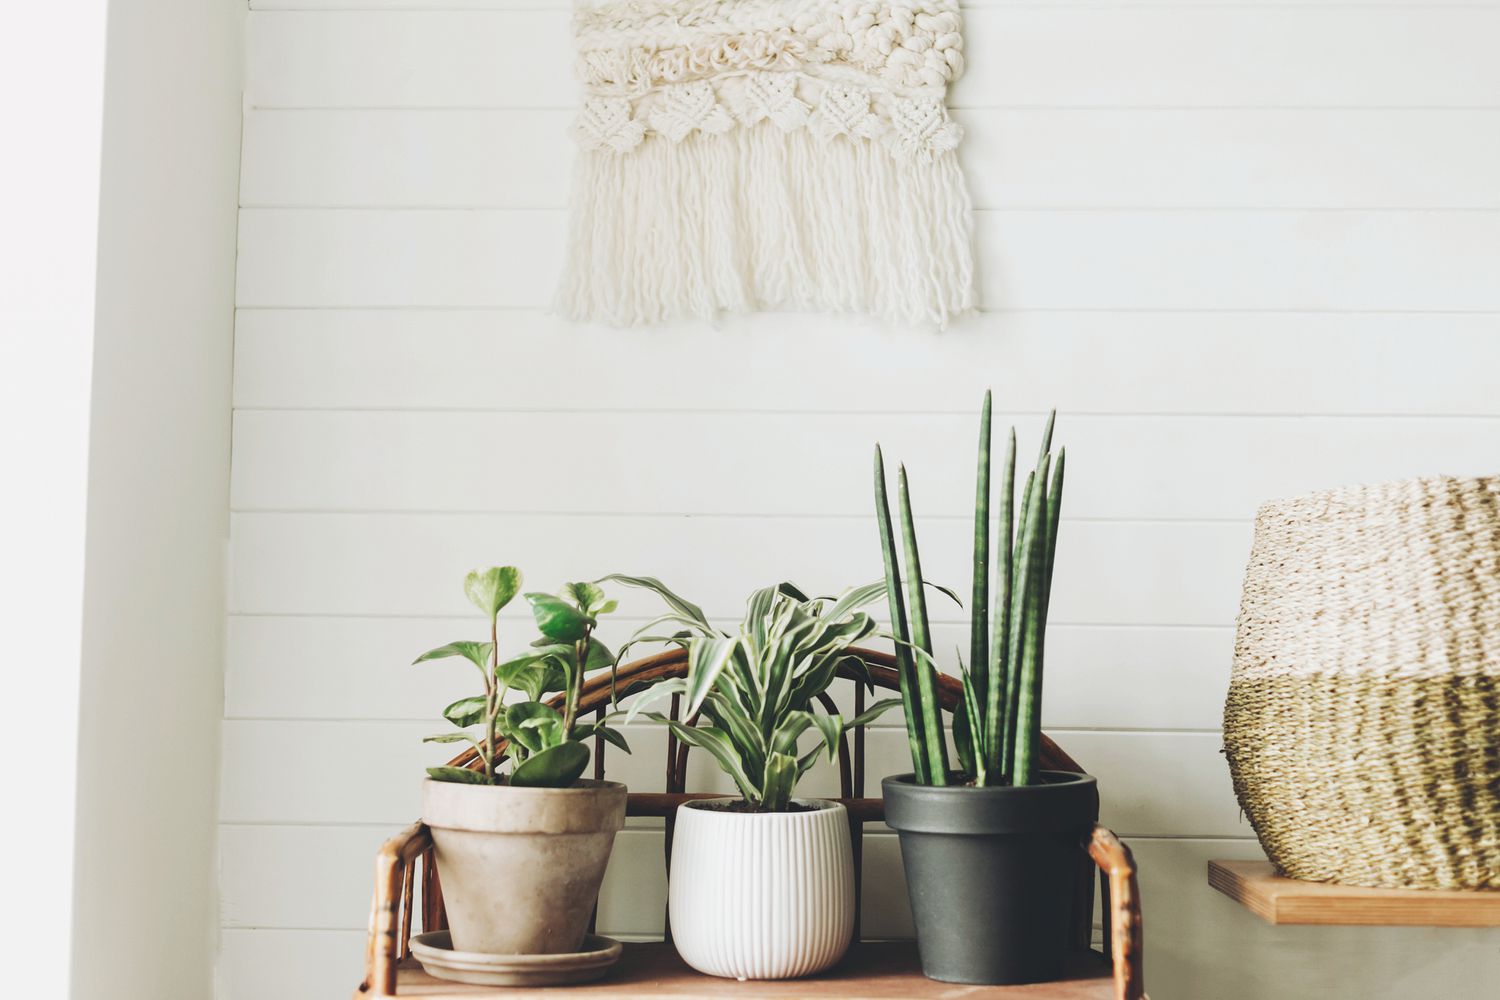 Stilvolle Grünpflanzen in Töpfen auf hölzernem Vintage-Ständer vor dem Hintergrund einer weißen, rustikalen Wand mit Stickerei. Peperomia, Sansevieria, Dracaena-Pflanzen, moderne Raumgestaltung